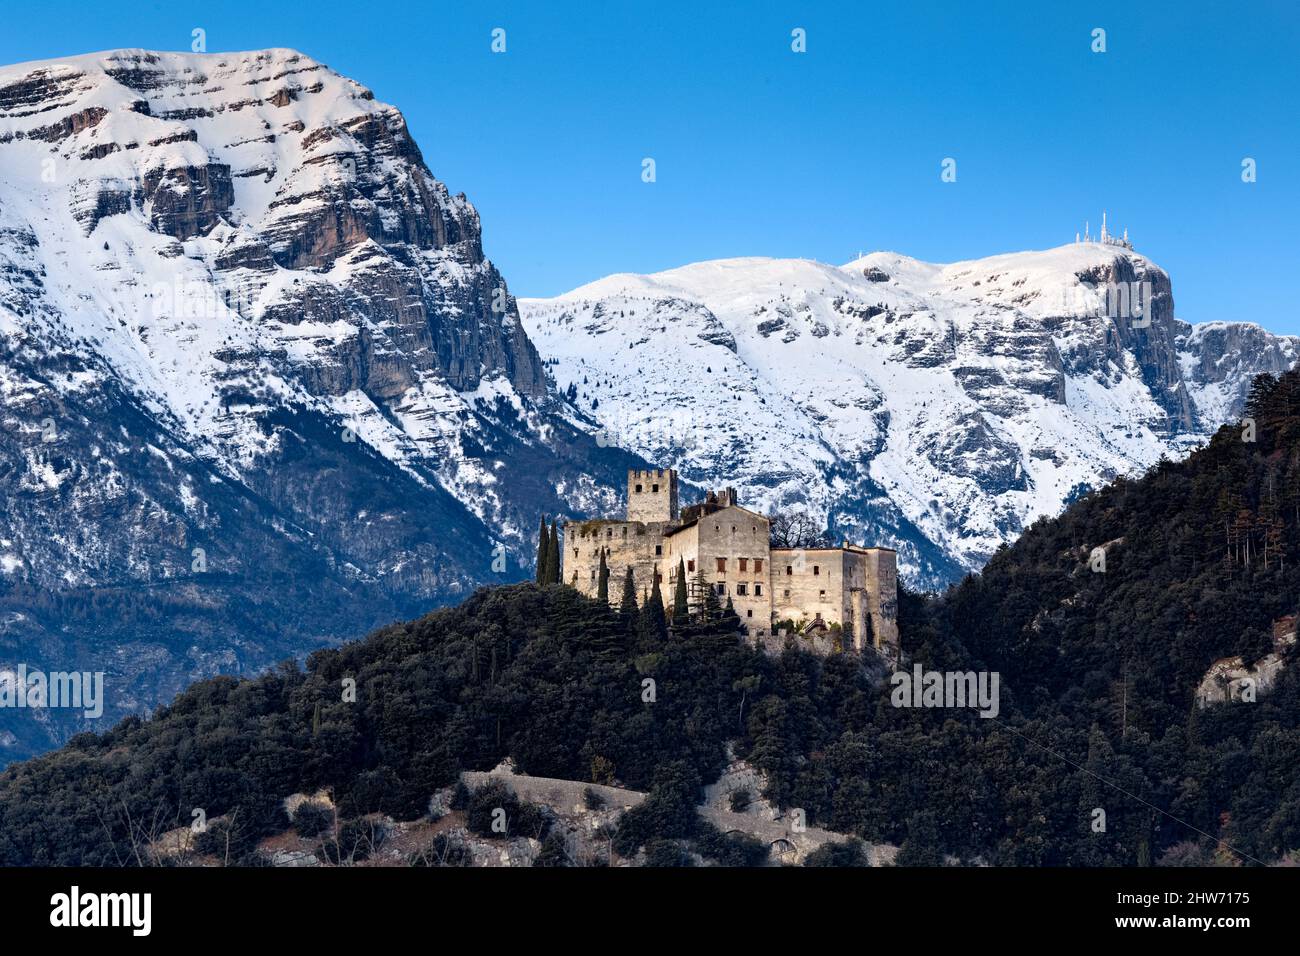 Le château de Madruzzo et le sommet du mont Paganella. Madruzzo, Trento province, Trentin-Haut-Adige, Italie, Europe. Banque D'Images